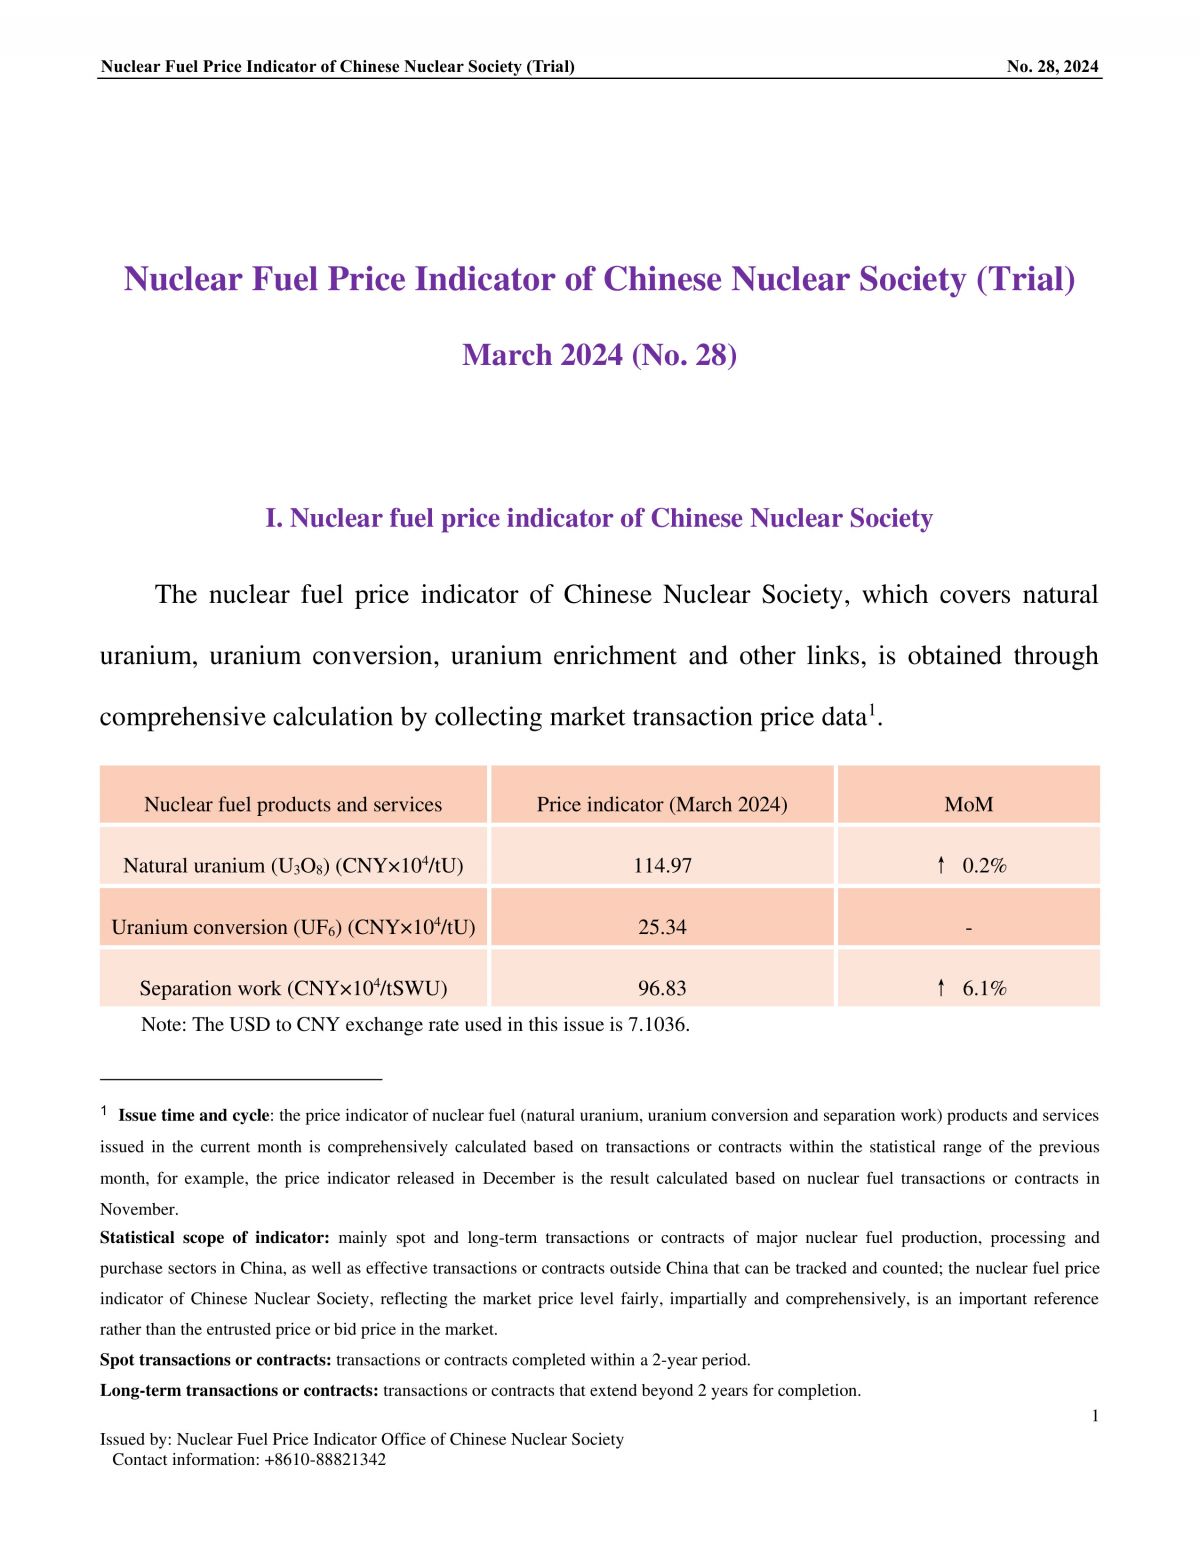 中国核学会核燃料价格指数(试运行)（2024年3月,总第28期）_EN-final-1.jpg